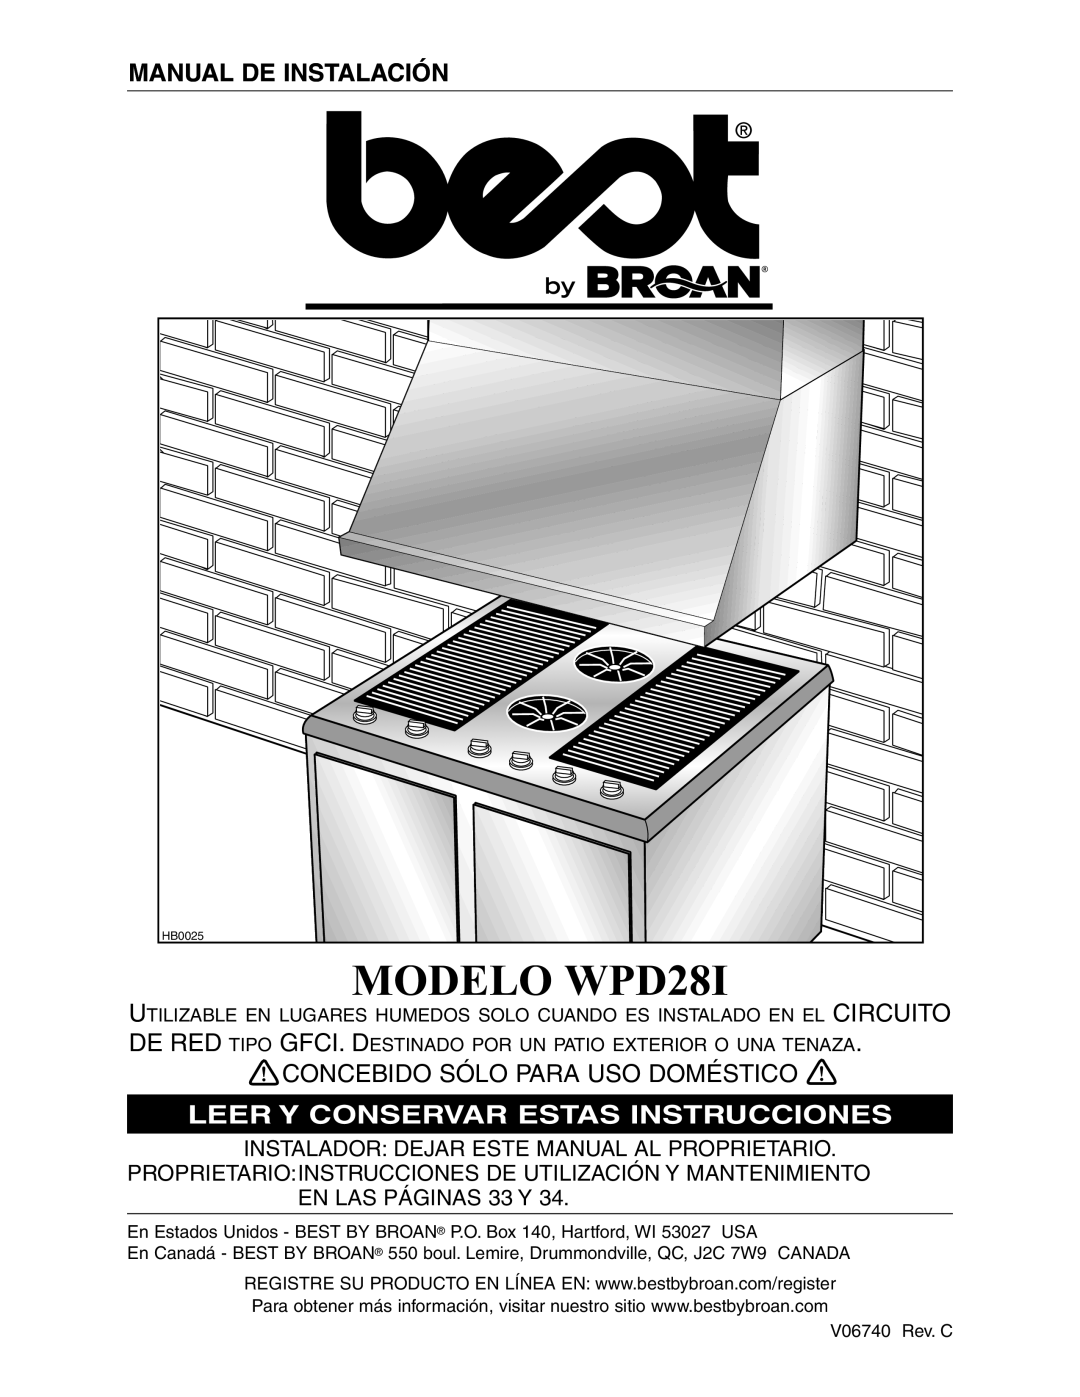 Best MODELO WPD28I, Manual De Instalación, Concebido Sólo Para Uso Doméstico, Leer Y Conservar Estas Instrucciones 